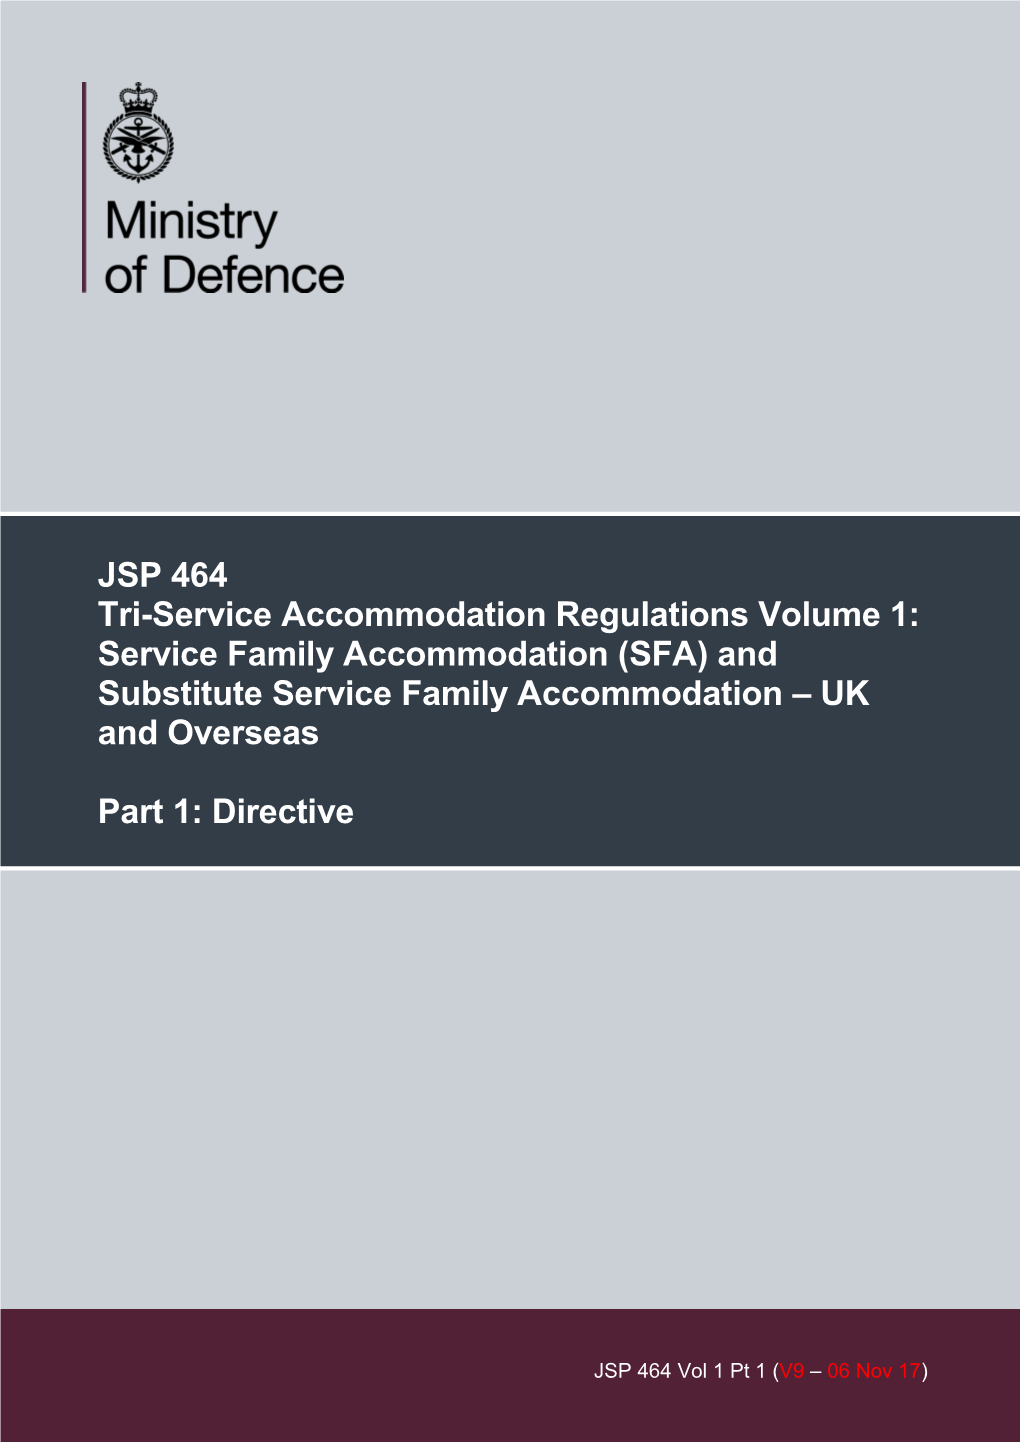 JSP 464: Service Family Accommodation (SFA)